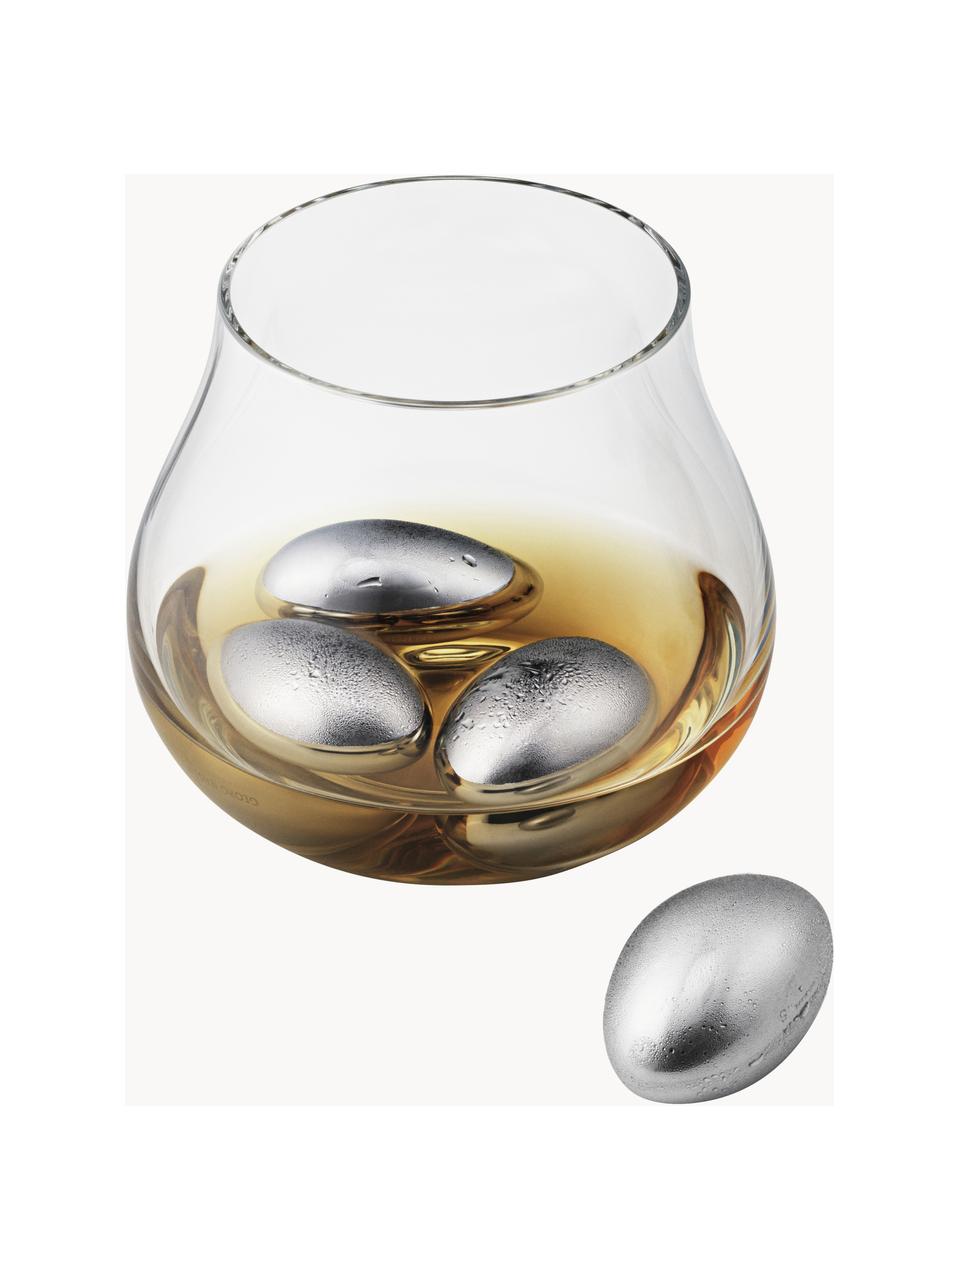 Kameny do whisky z nerezové oceli Sky, 4 ks, Leštěná nerezová ocel, Stříbrná, vysoce leštěná, Š 2 cm, V 4 cm